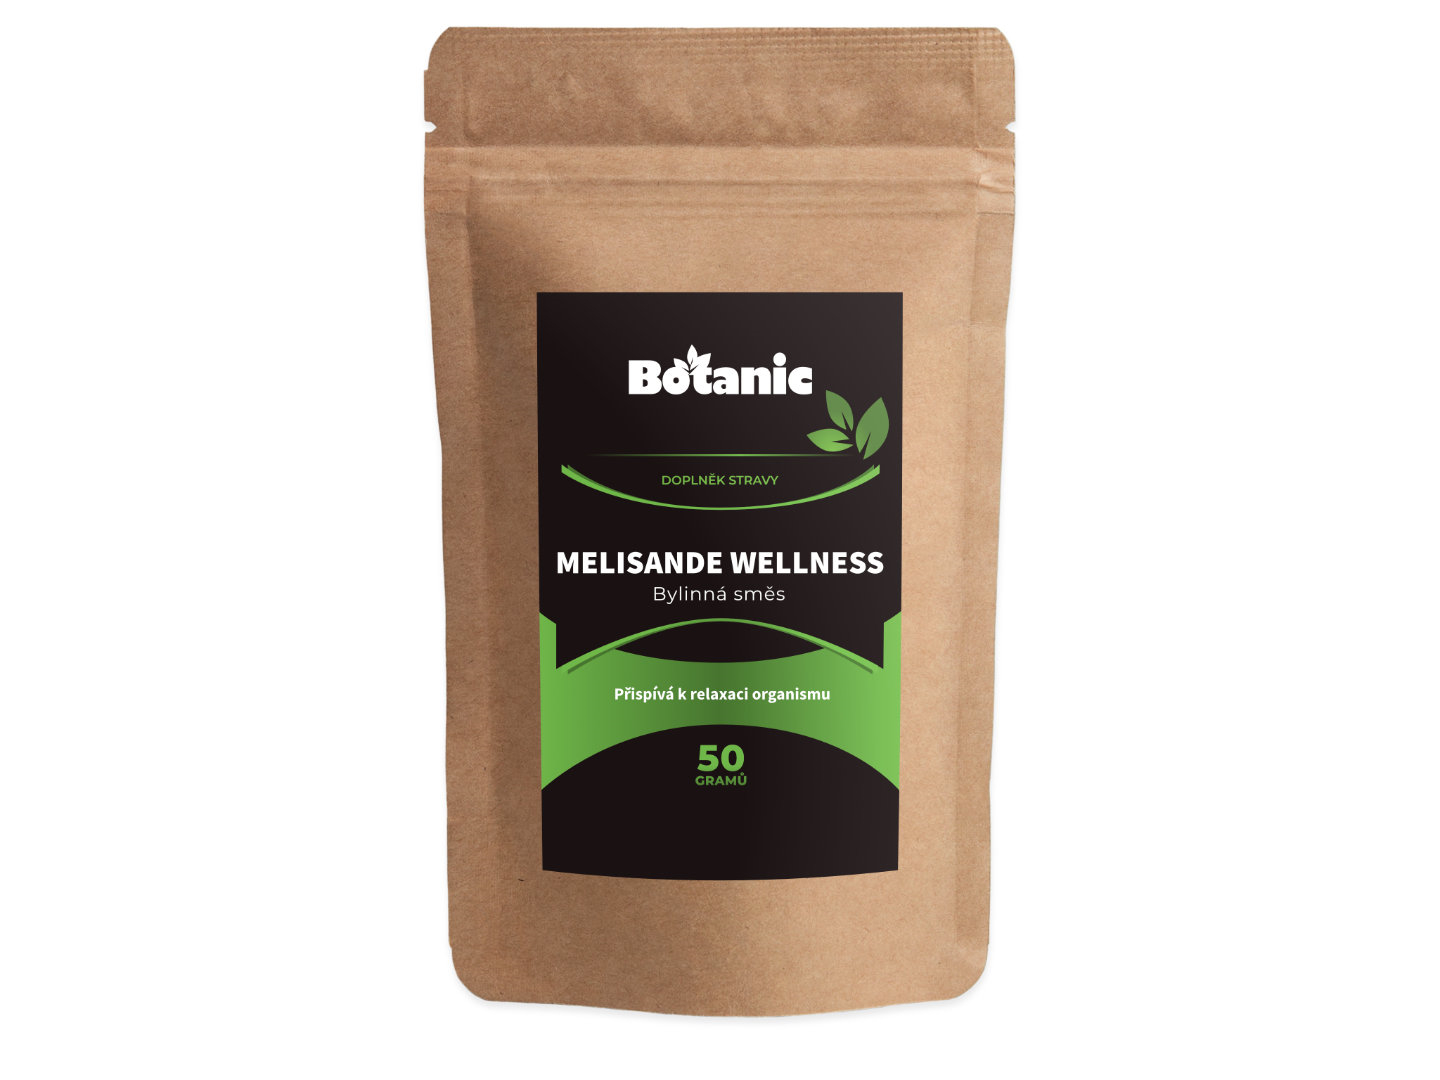 Botanic Melisande Wellness - Bylinná směs 50g